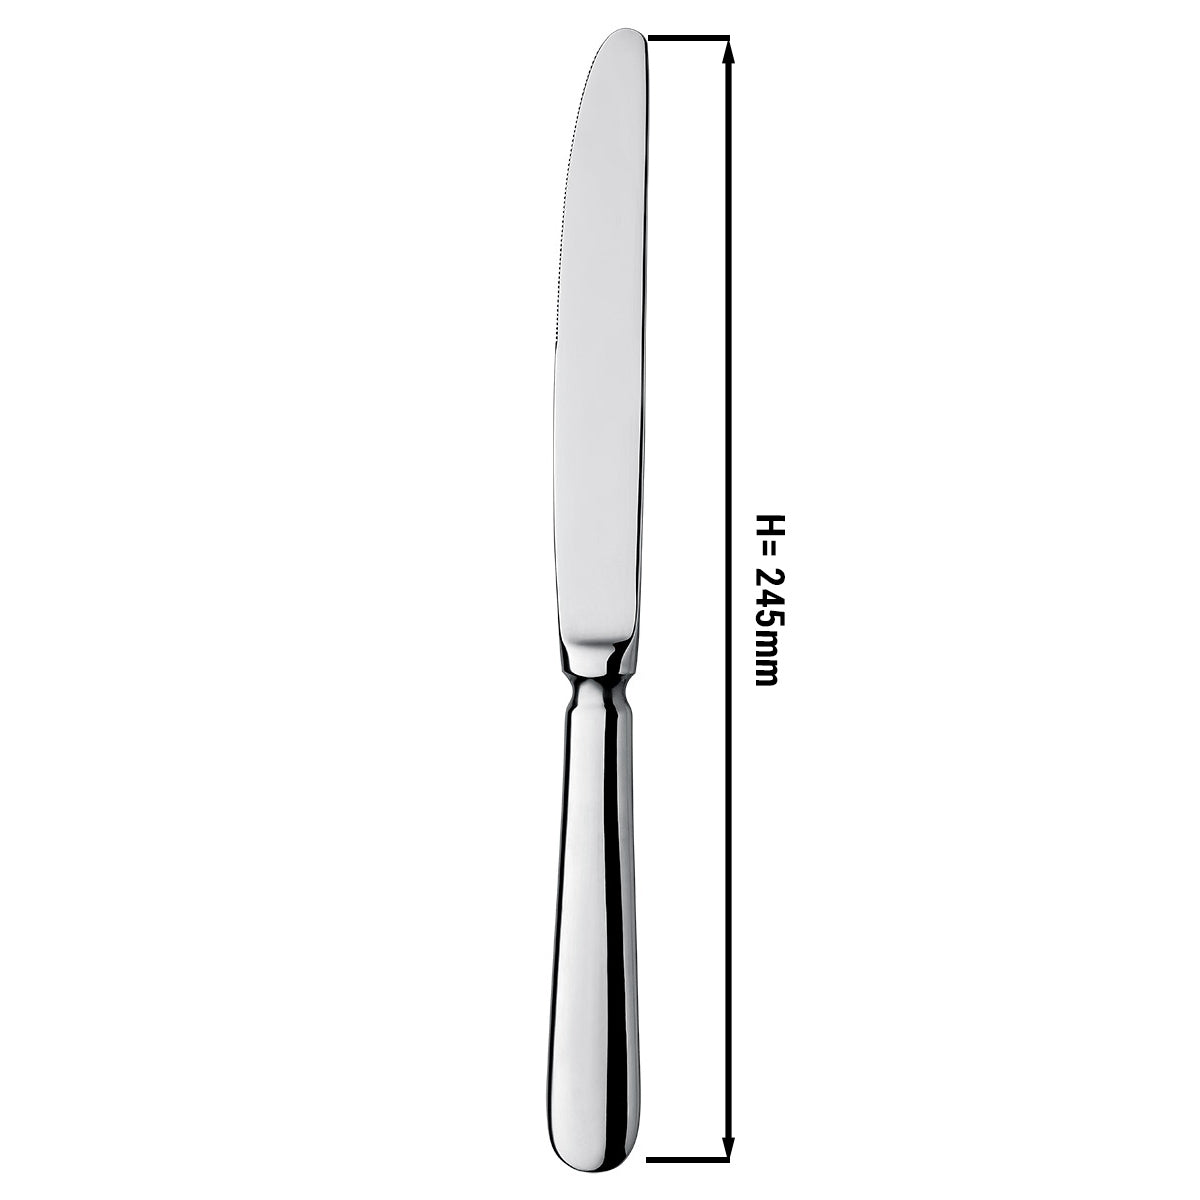 Middag knive Milo - 24,5 cm - sæt af 12